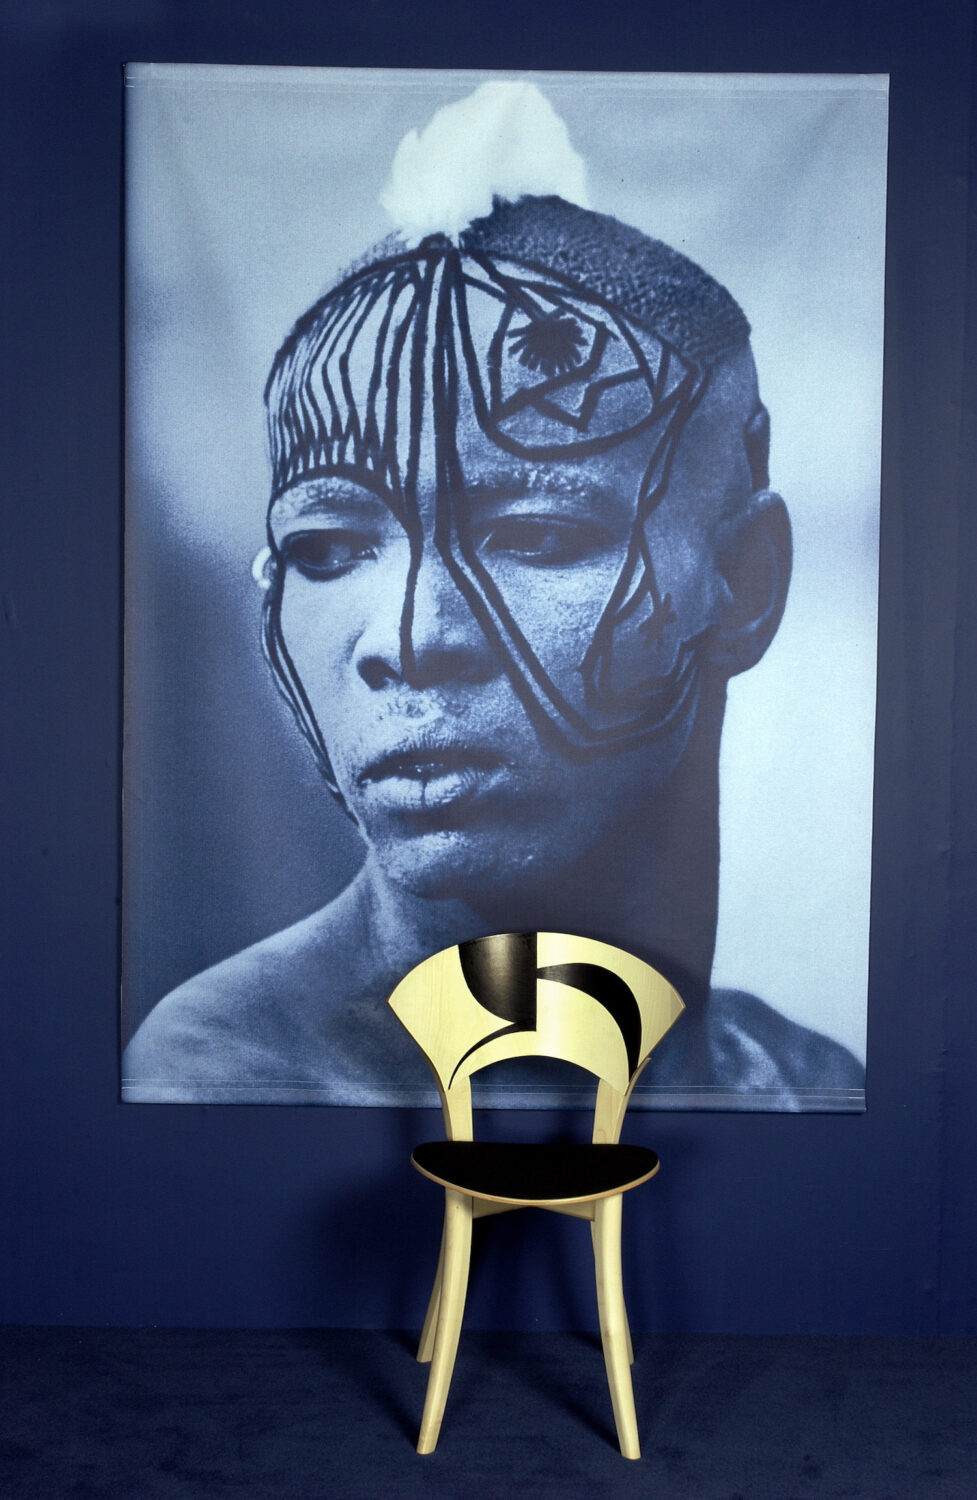 Dekoration på Kau-stolen (2003) er inspireret af det afrikanske Kau-folk